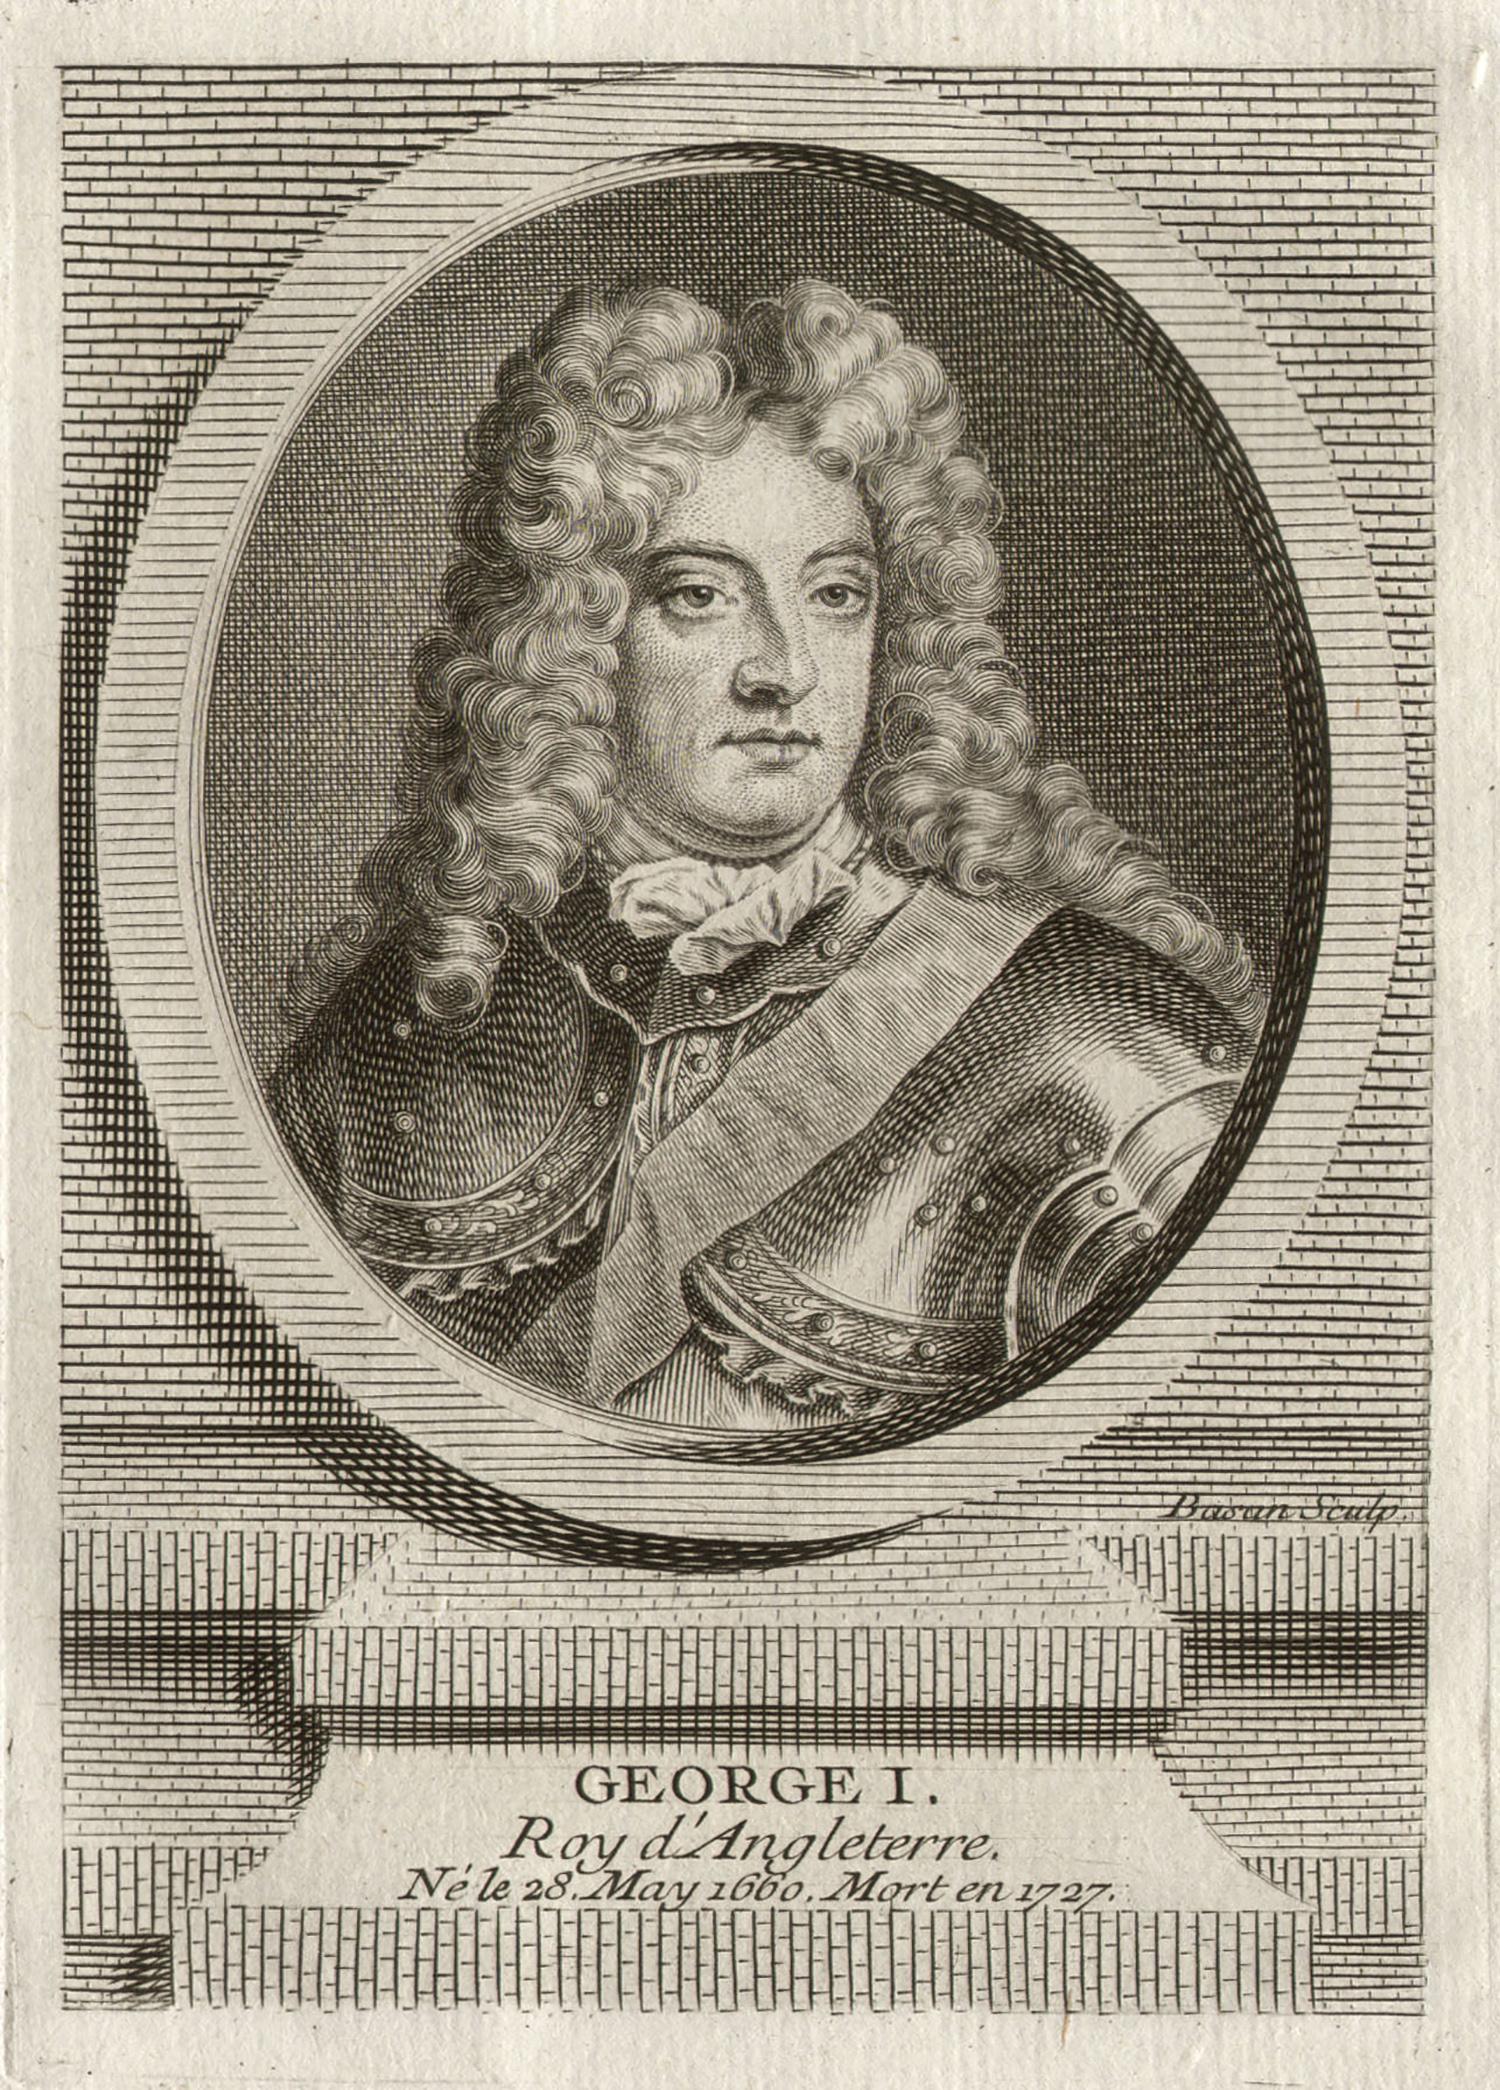 Pierre Francois Basan (1723-1797) after Founan Portrait Print – George I., König von England, königliche Porträtgravur, um 1780